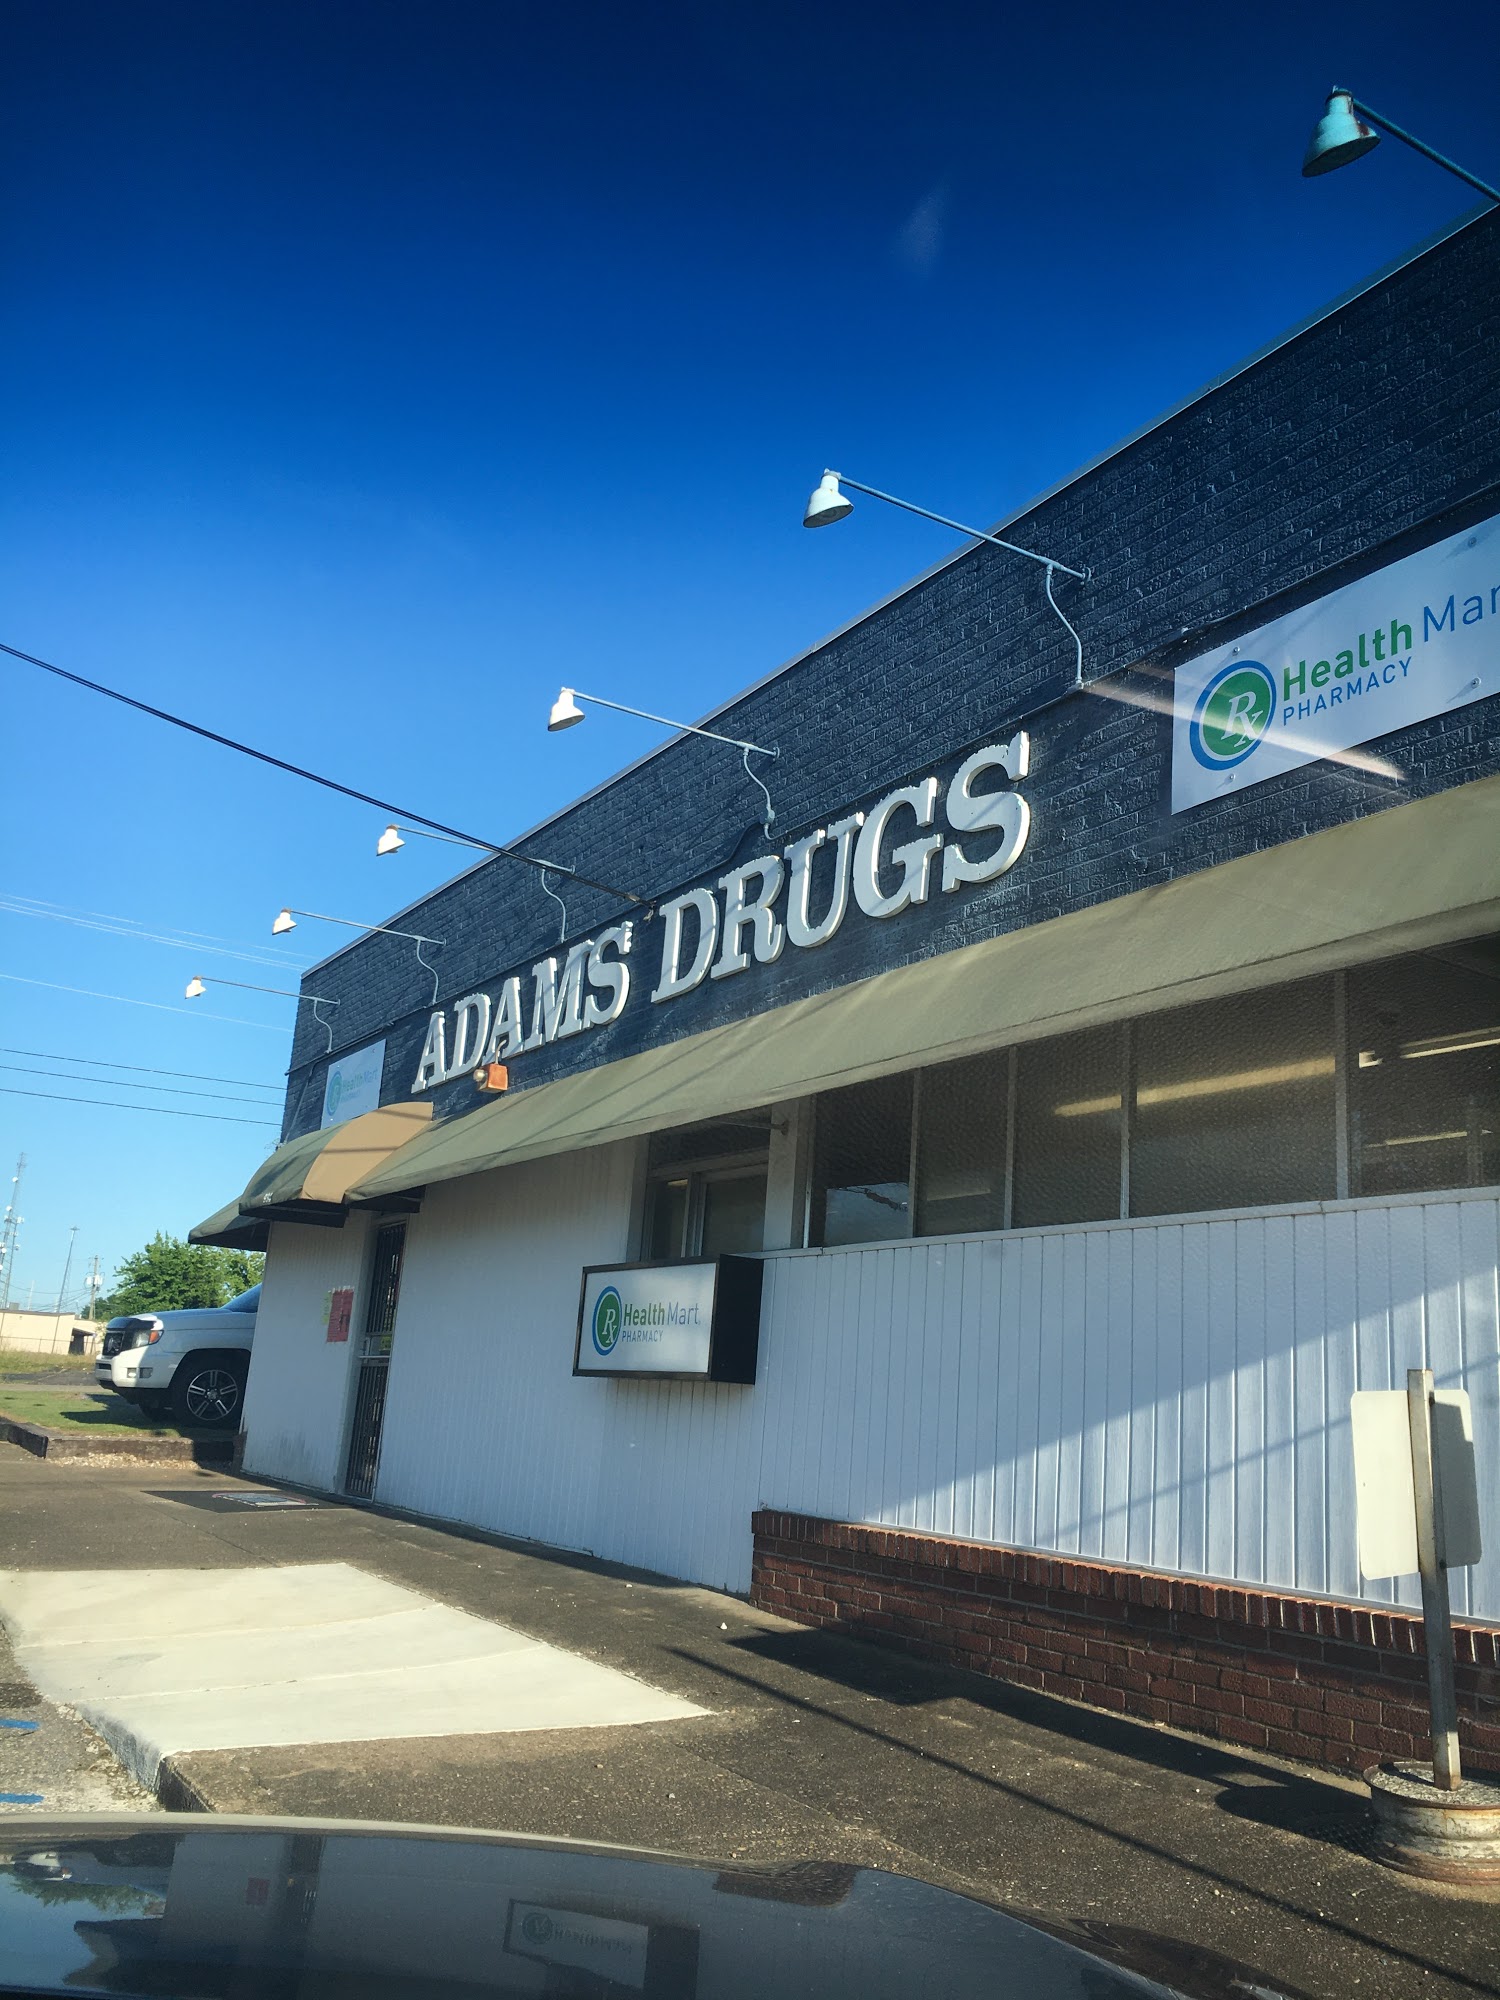 Adams Street Drug